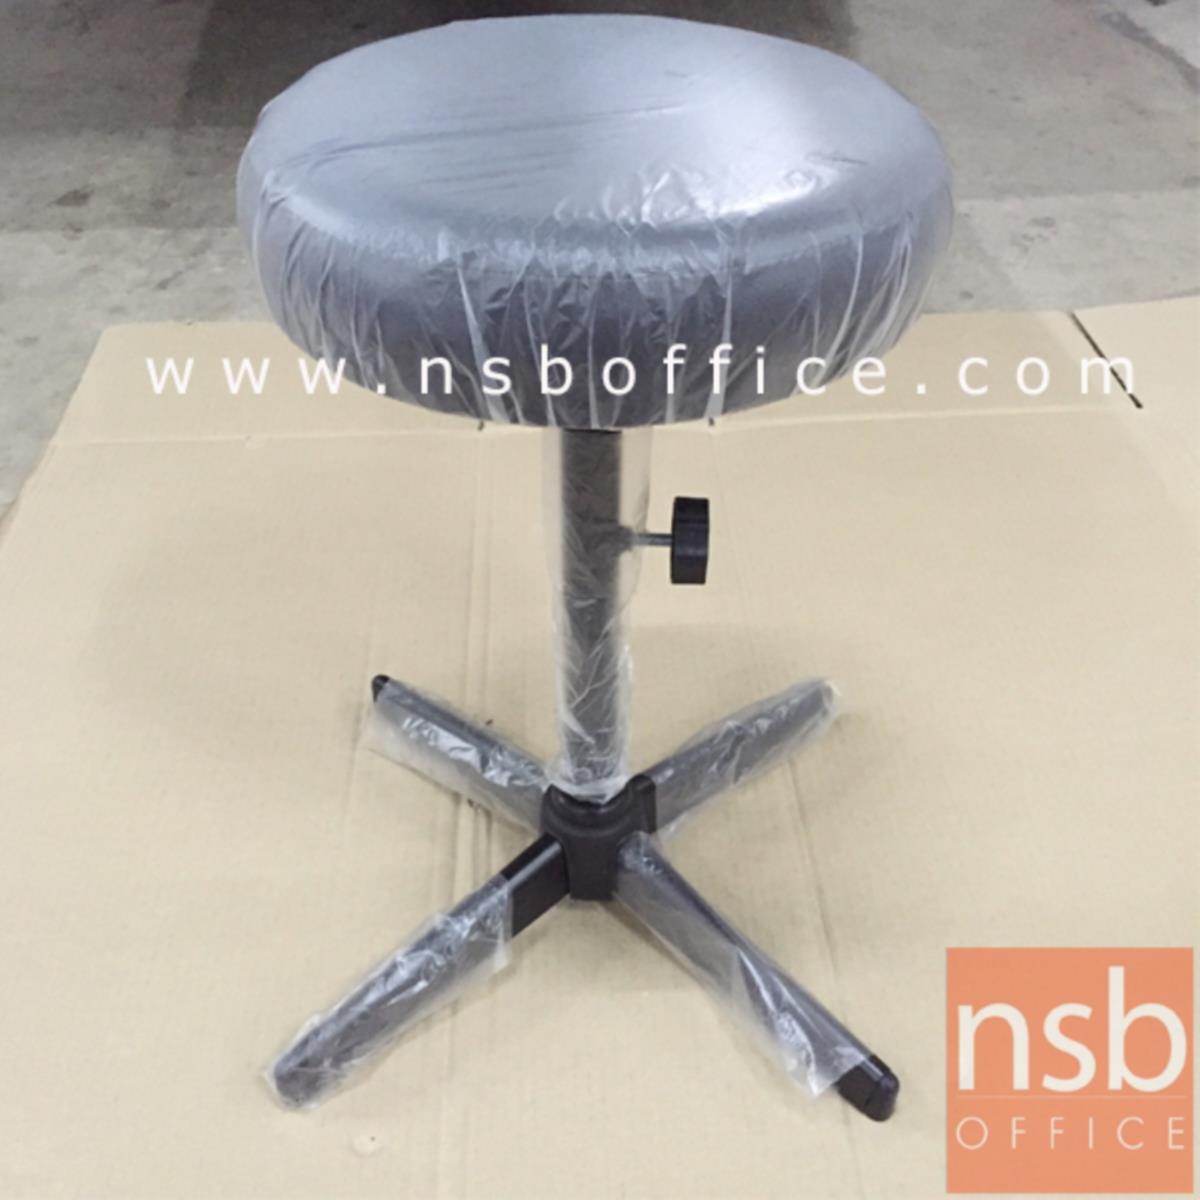 เก้าอี้บาร์สตูลที่นั่งกลม รุ่น Norabel (นอร่าเบล) ขนาด 30.5Di*49H cm. ขาเหล็กพ่นดำ 4 แฉก